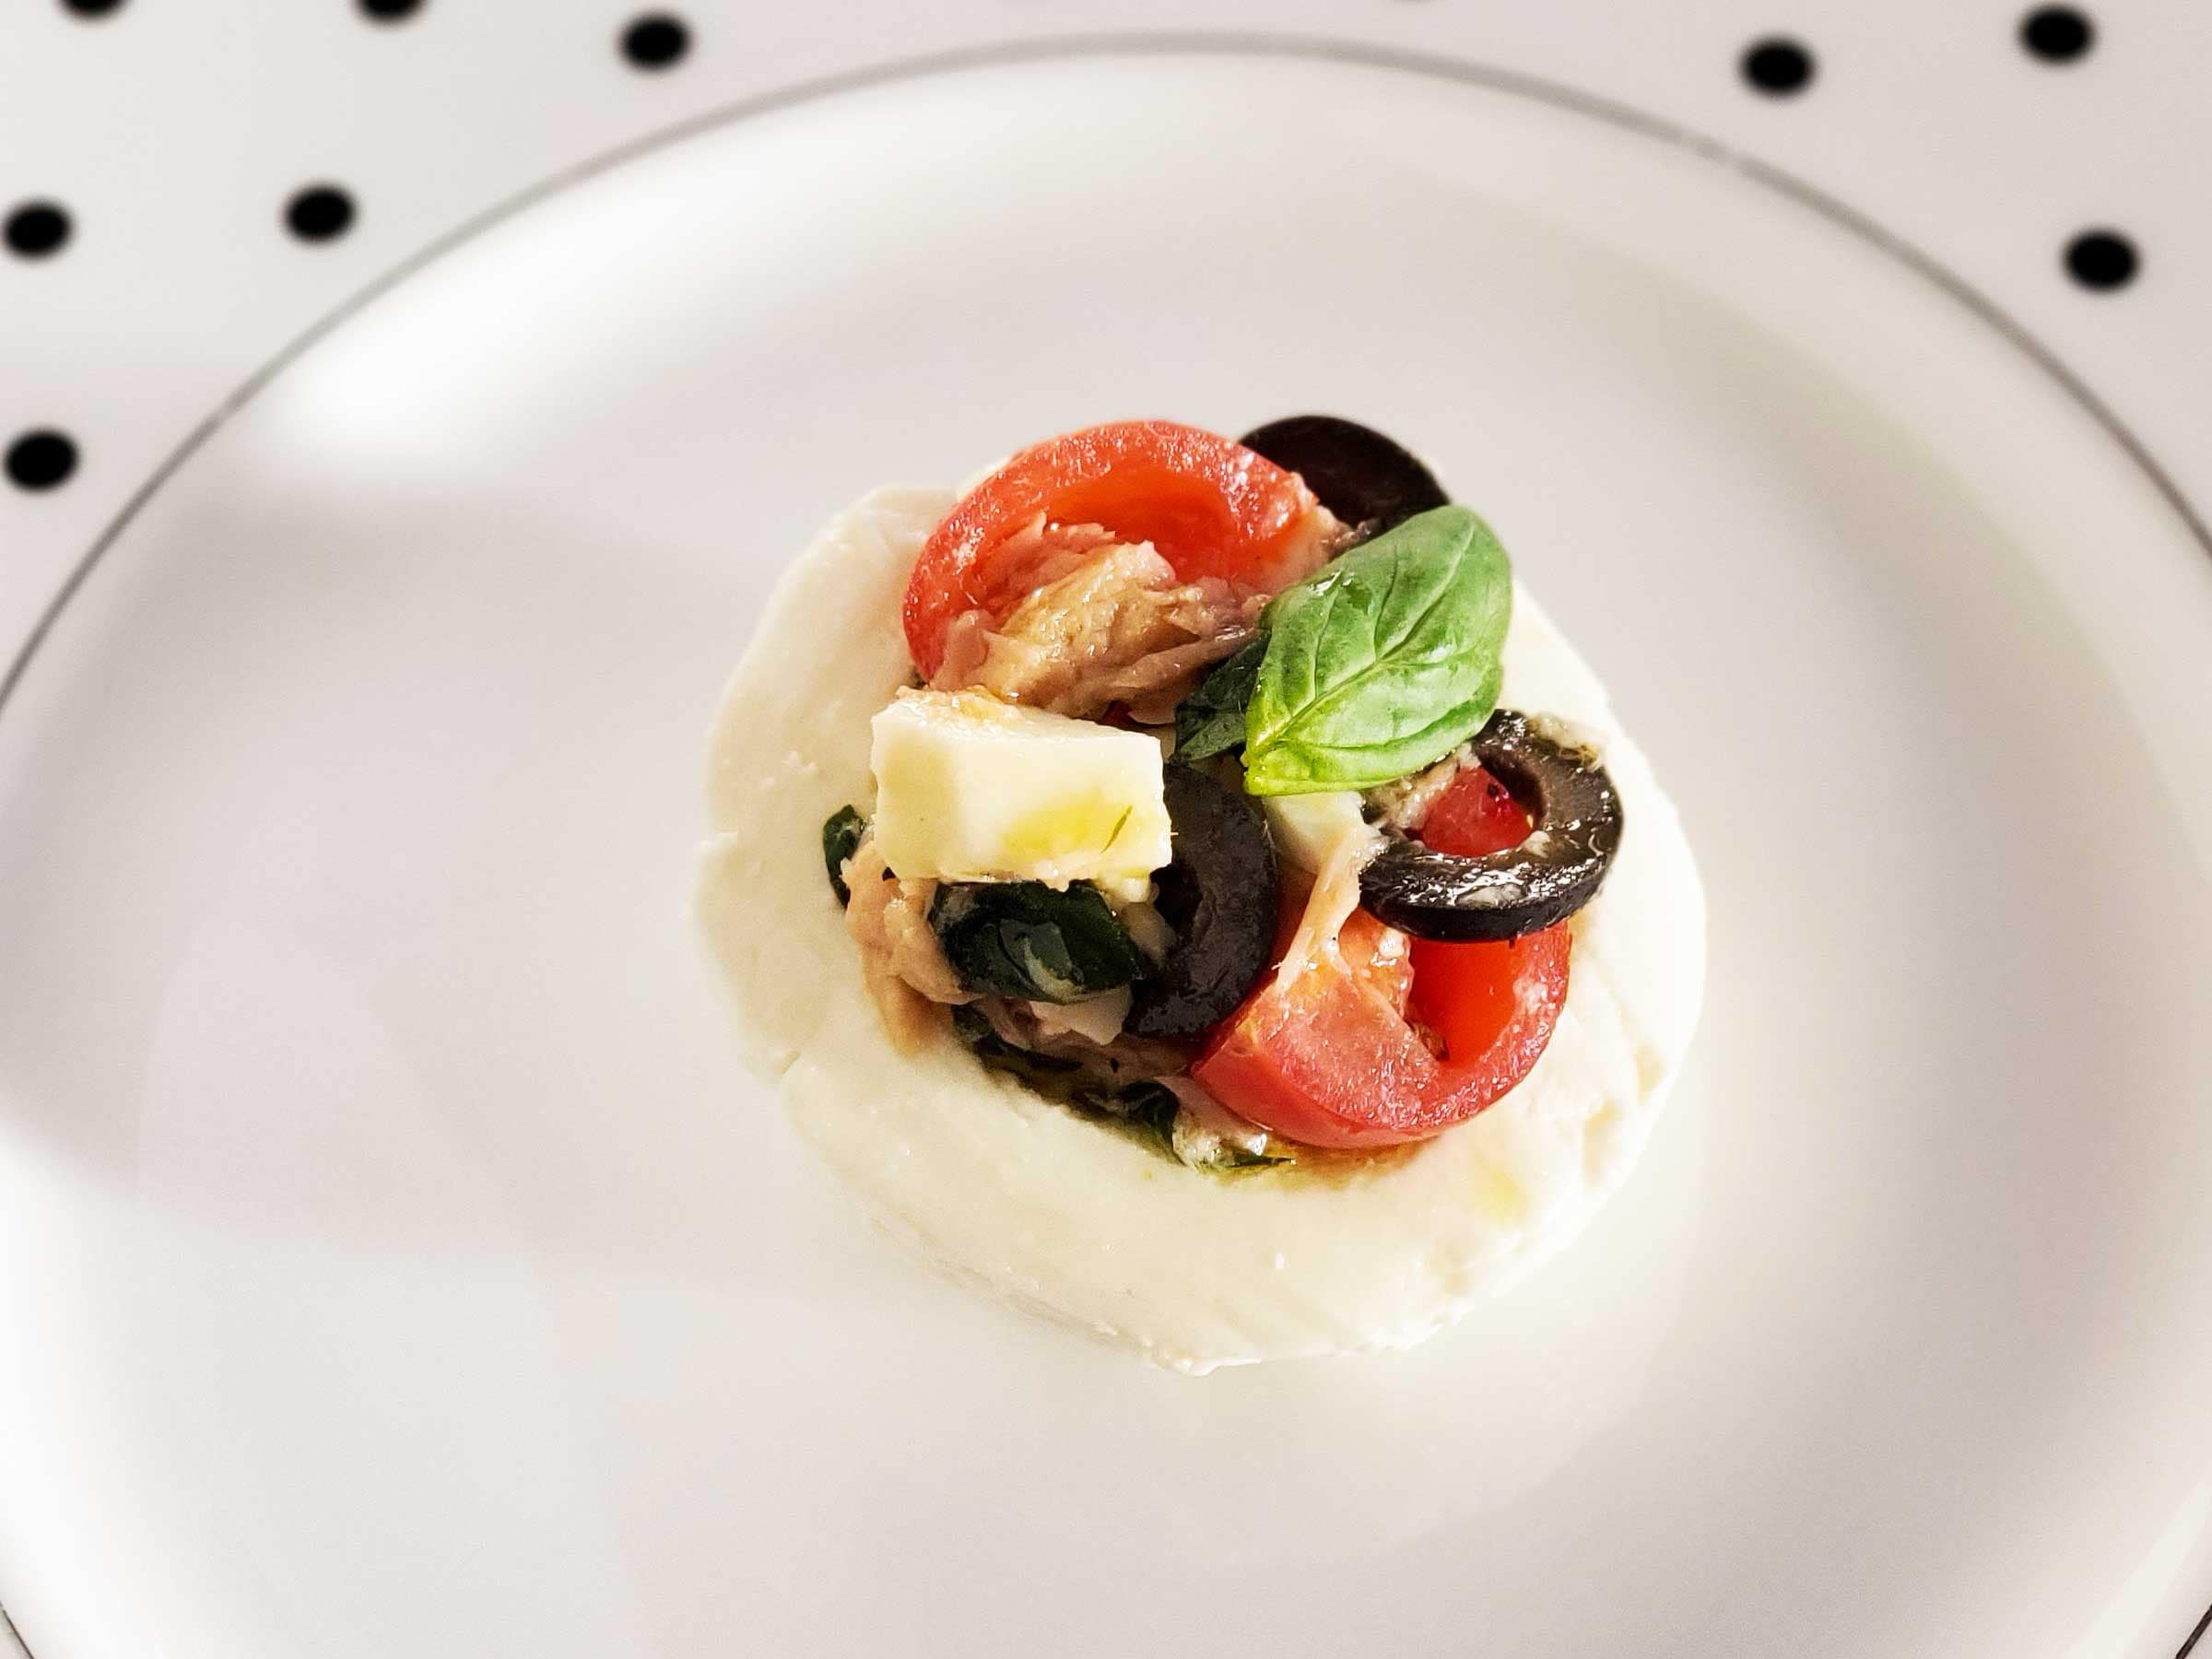 あと1品 に便利なイタリア前菜レシピ モッツァレラチーズと野菜のリピエーノ 簡単なのに味は抜群 イタリア マンマの愛情レシピ